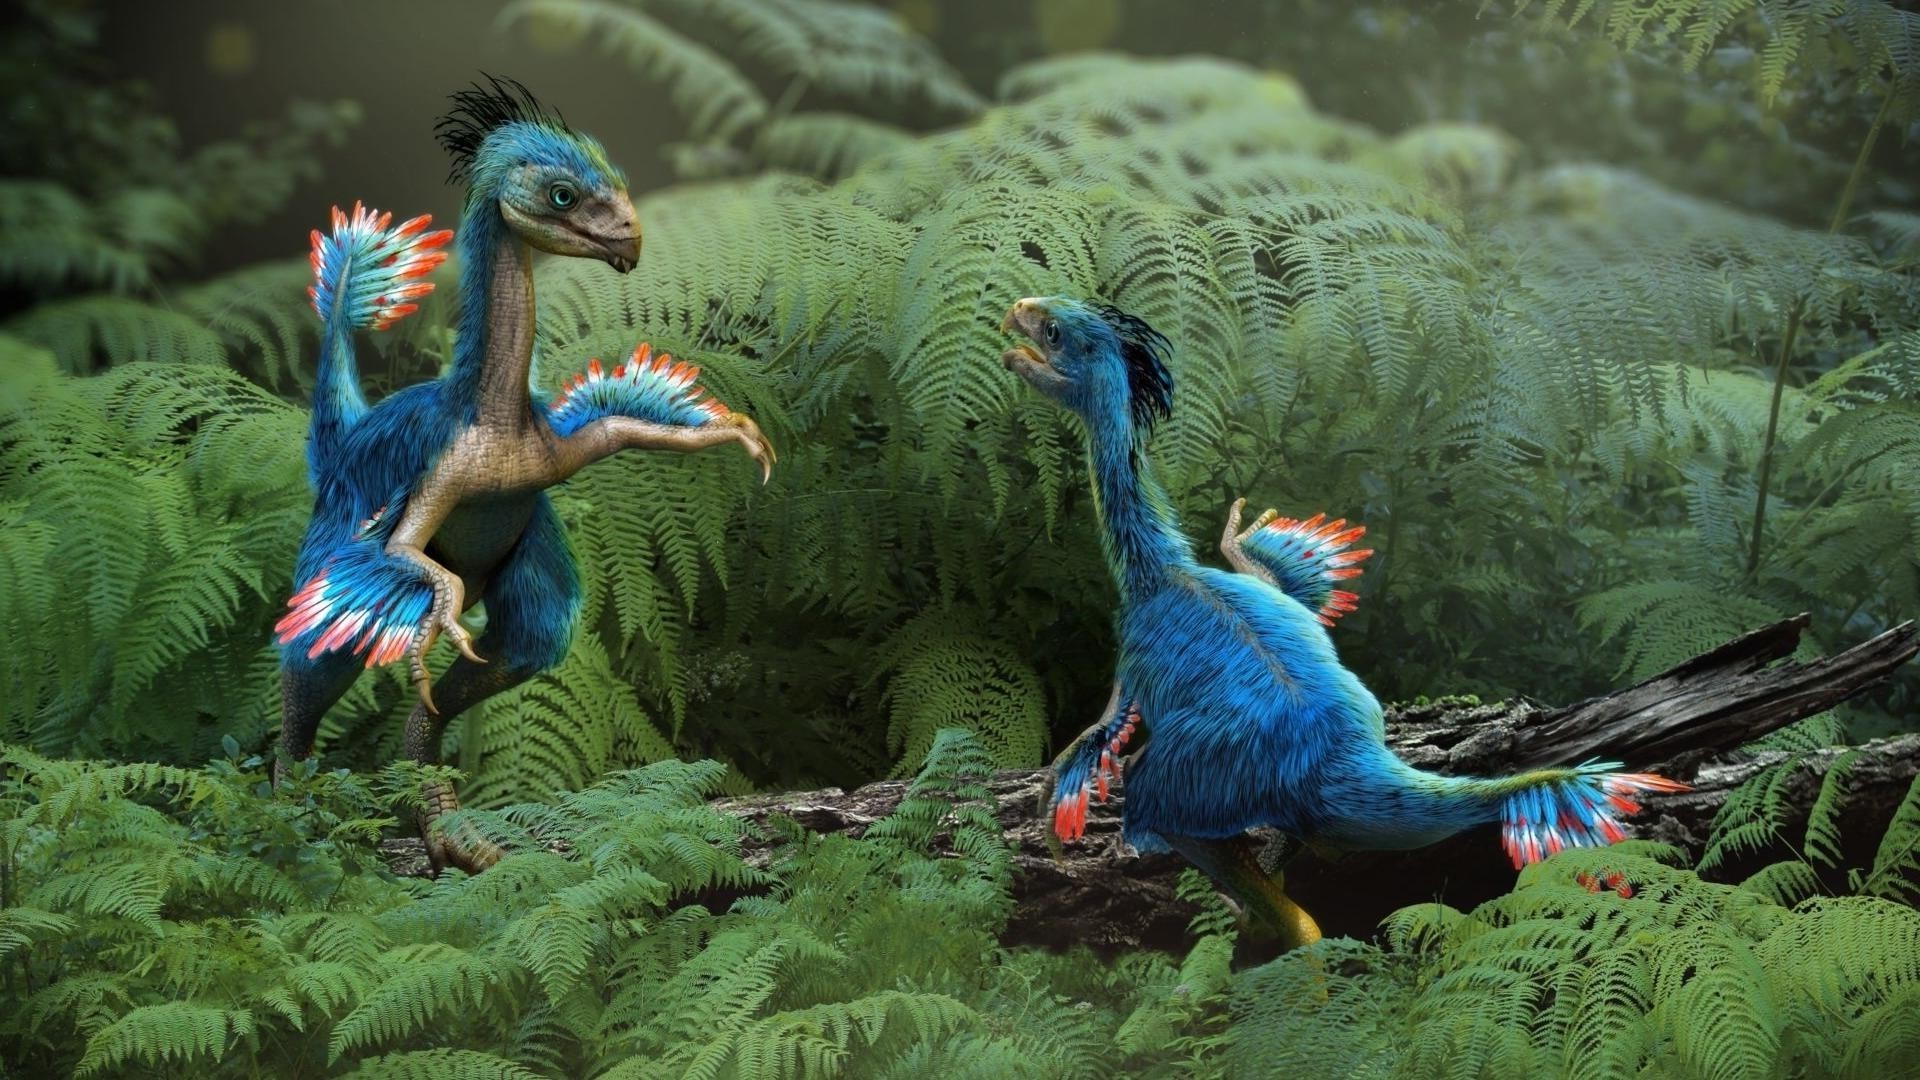 динозавры птица зоопарк перо дикой природы природа цвет попугай дневной свет животное птицы клюв тропический